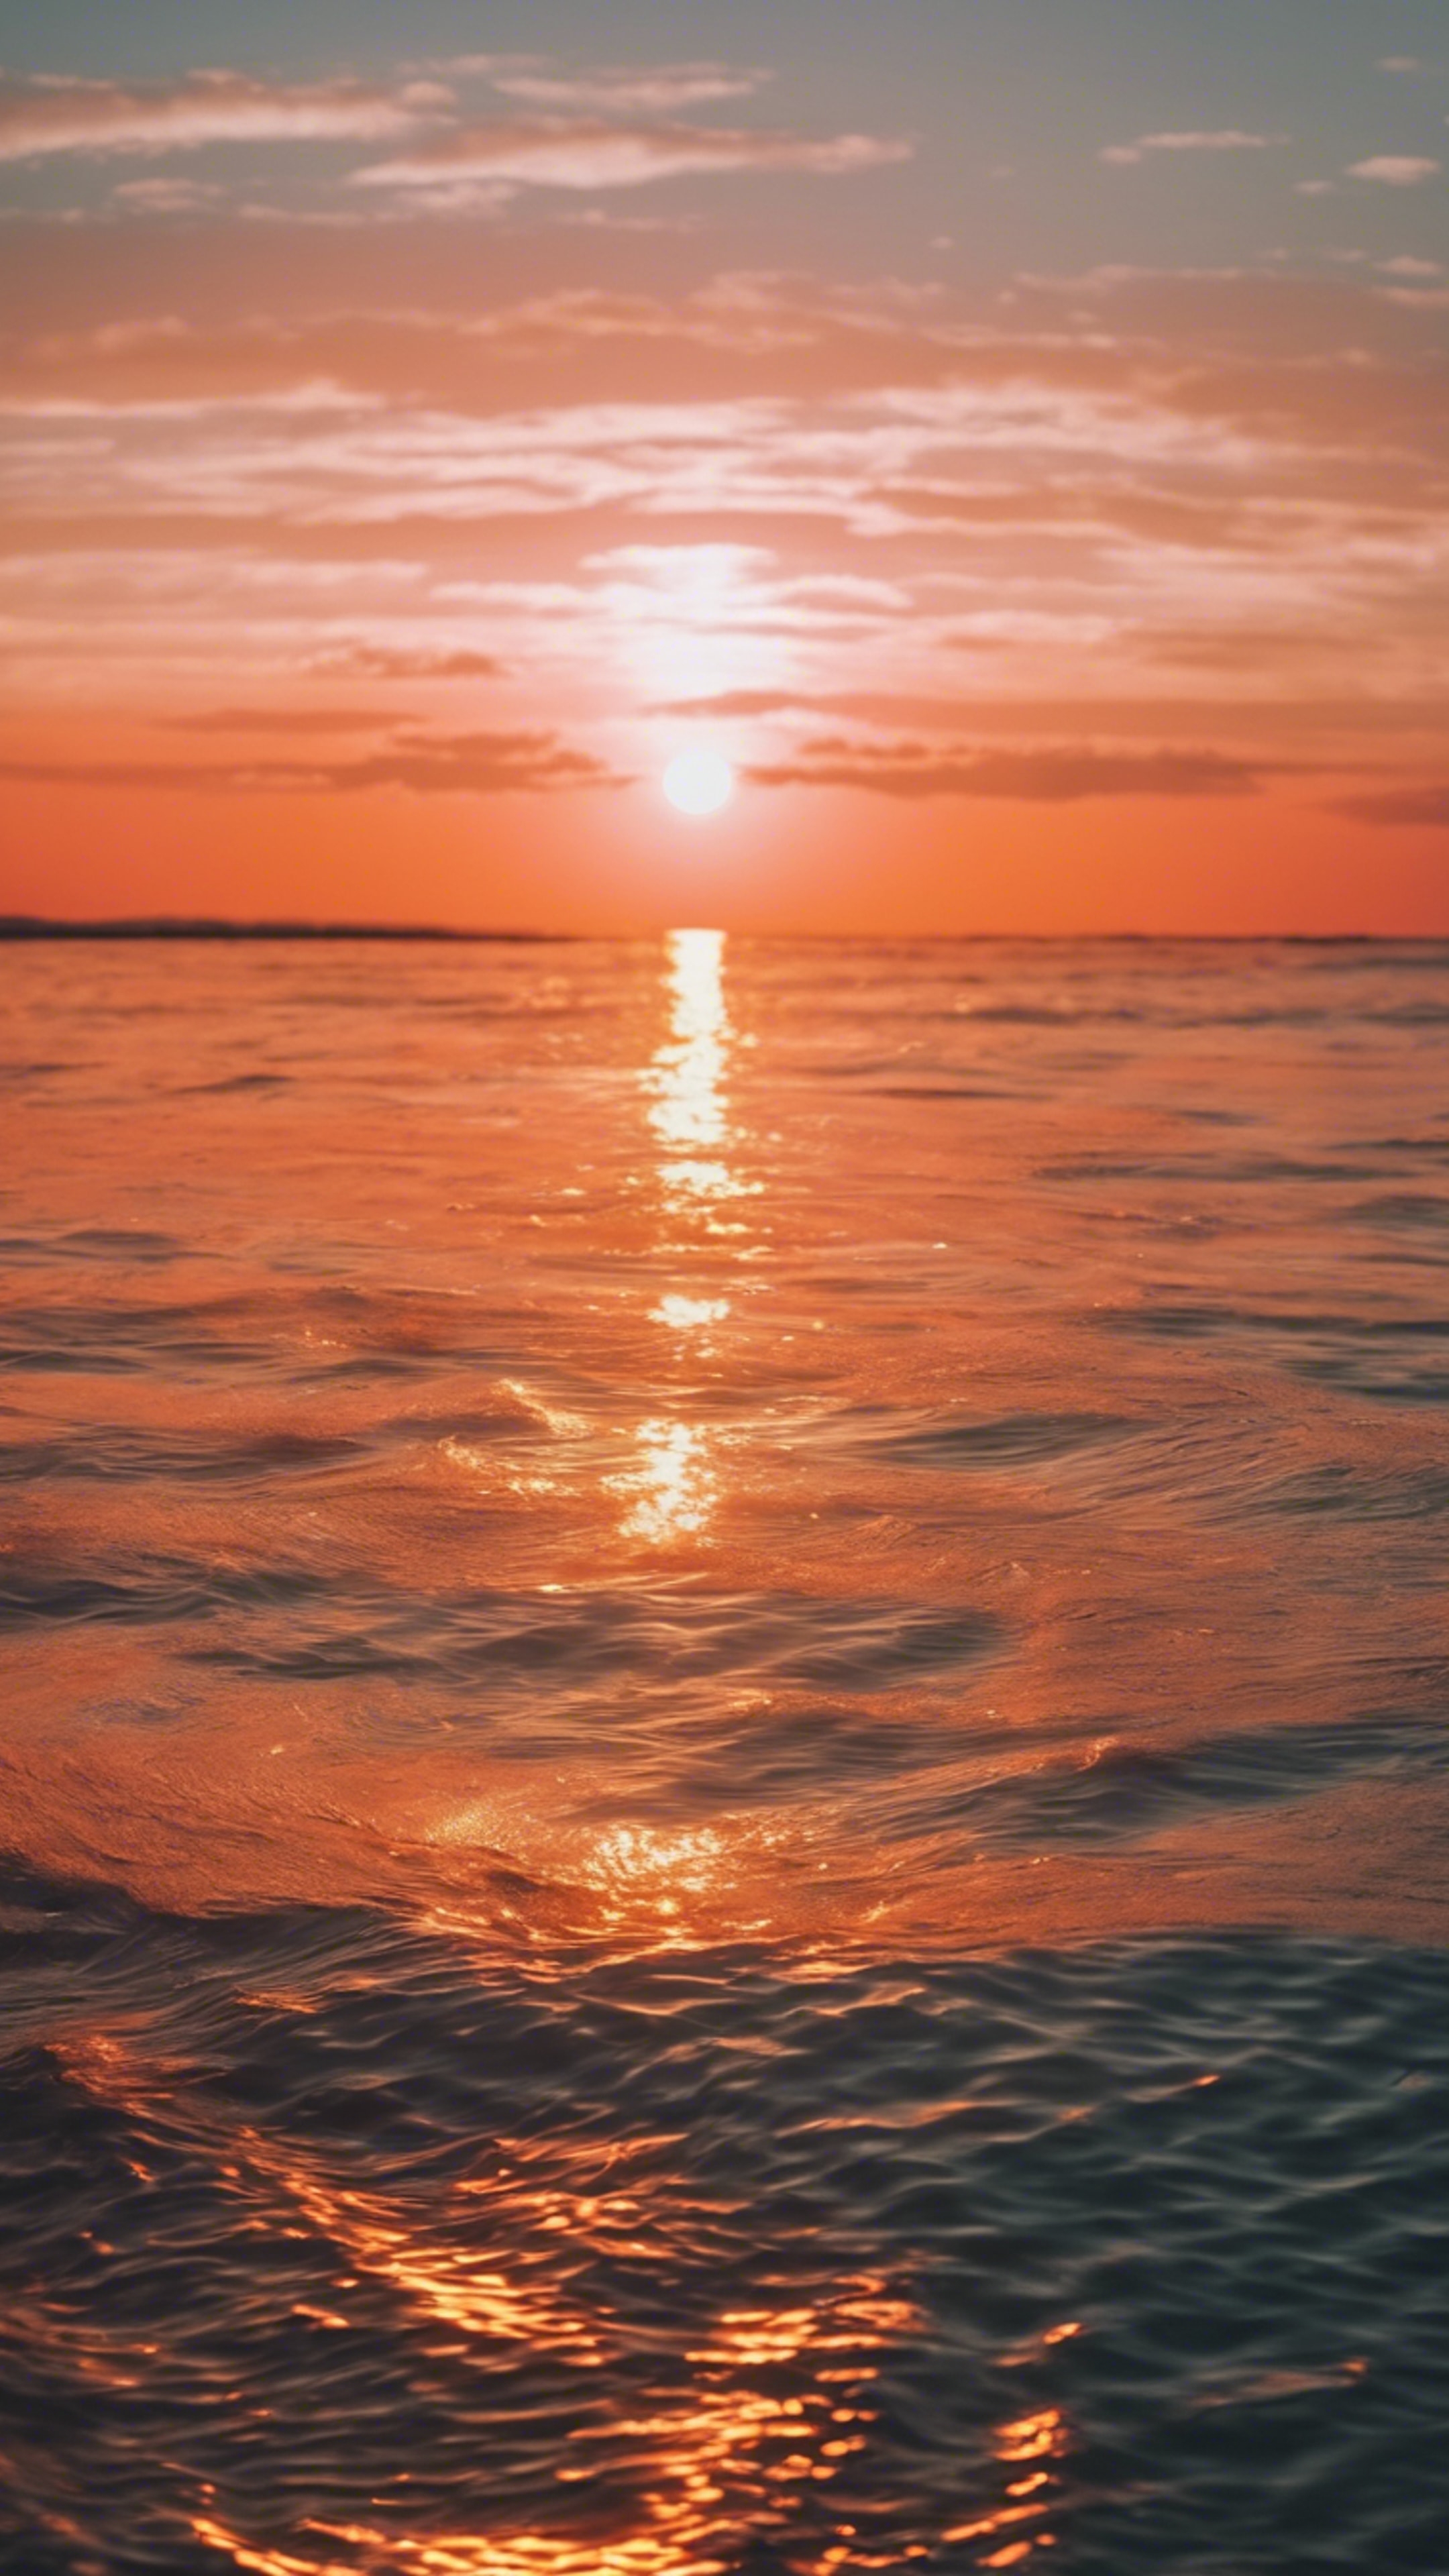 Bright neon orange sun setting over a calm sea. Tapeta[6f90c626ce0243a7b617]